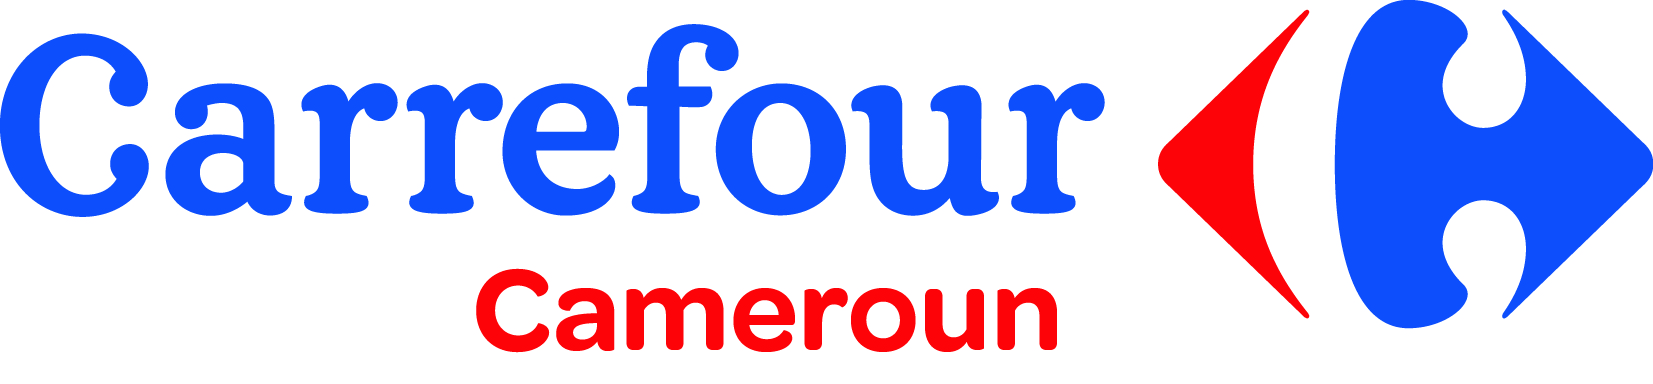 Logo_Carrefour_Cameroun_Rectangle